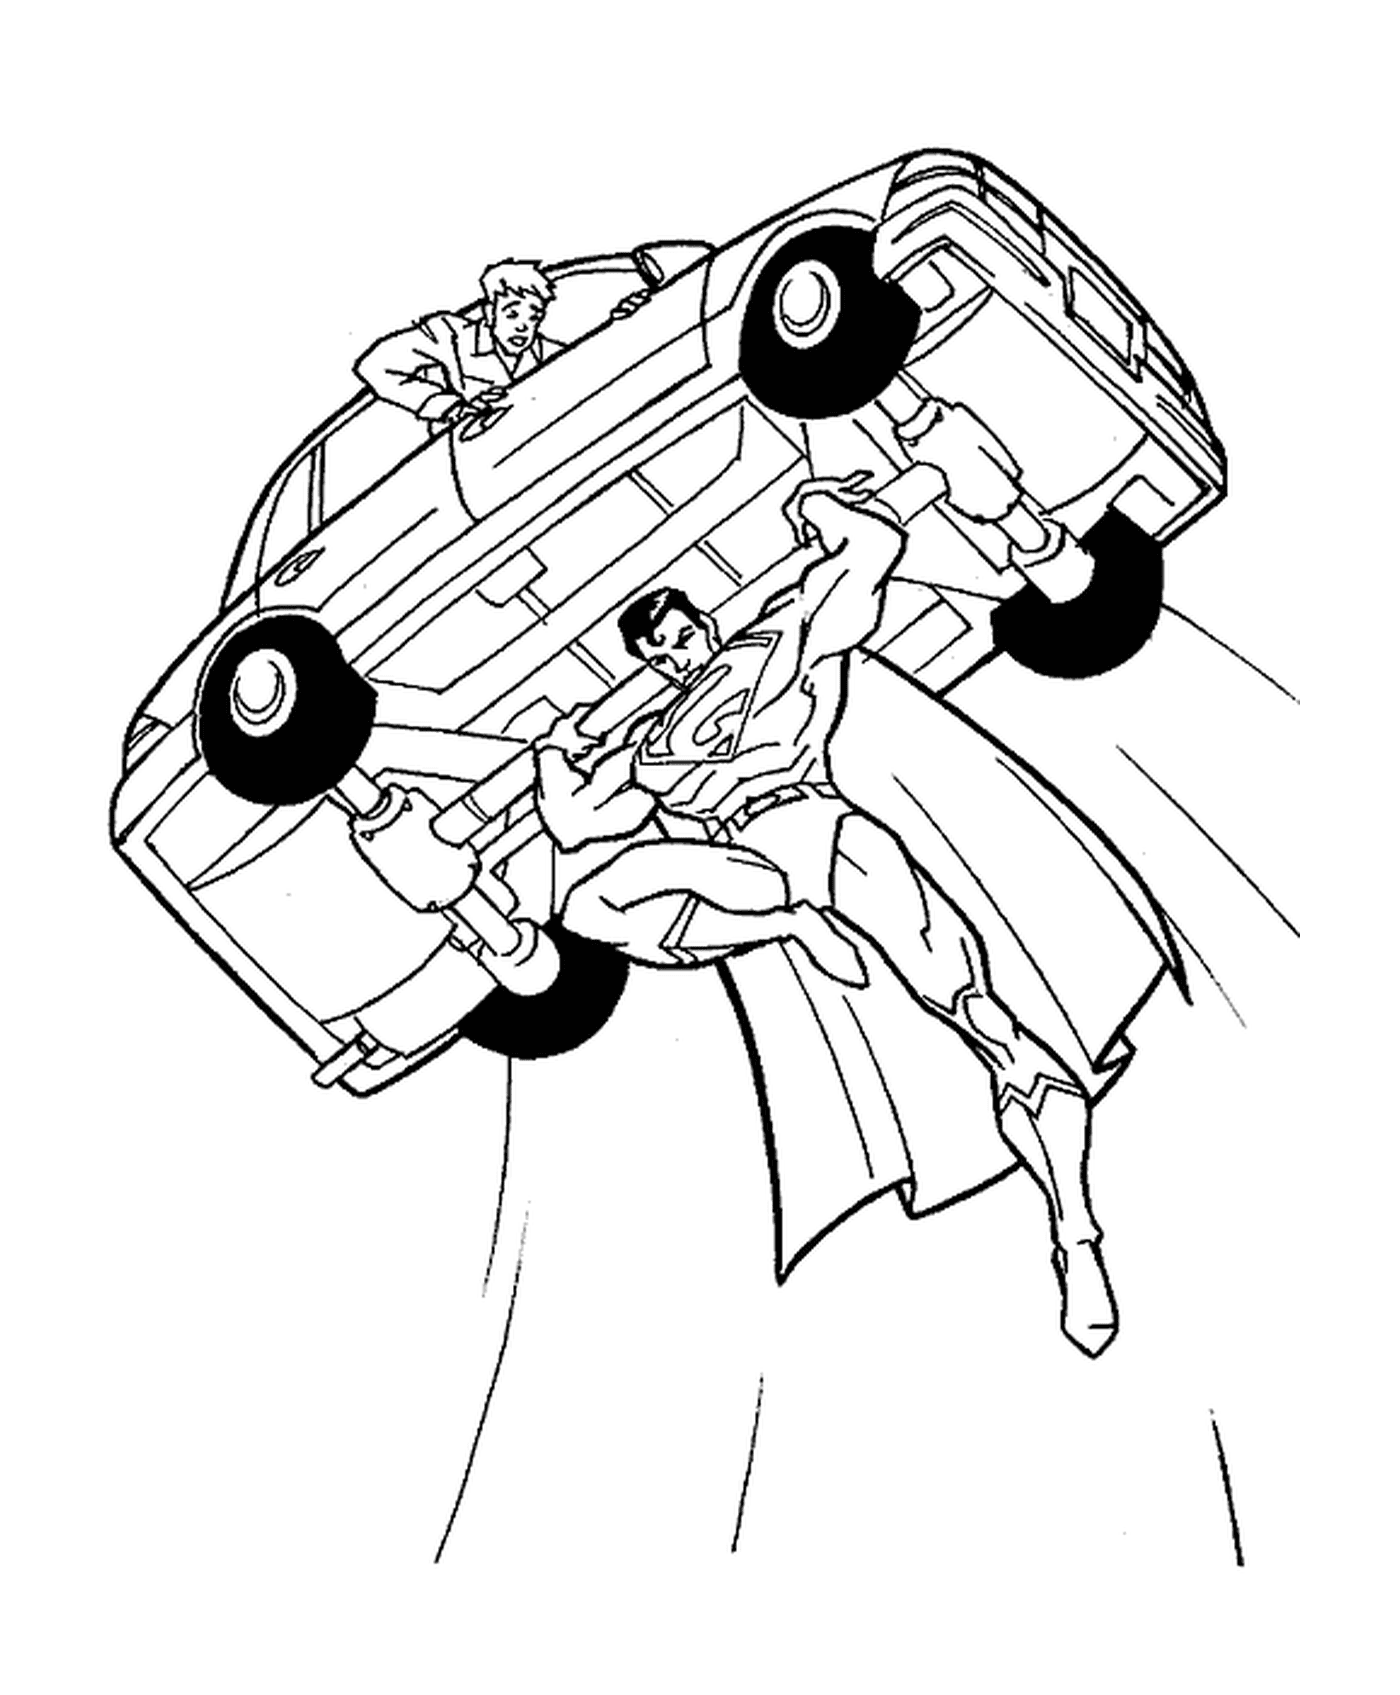  Superman lifts a car 